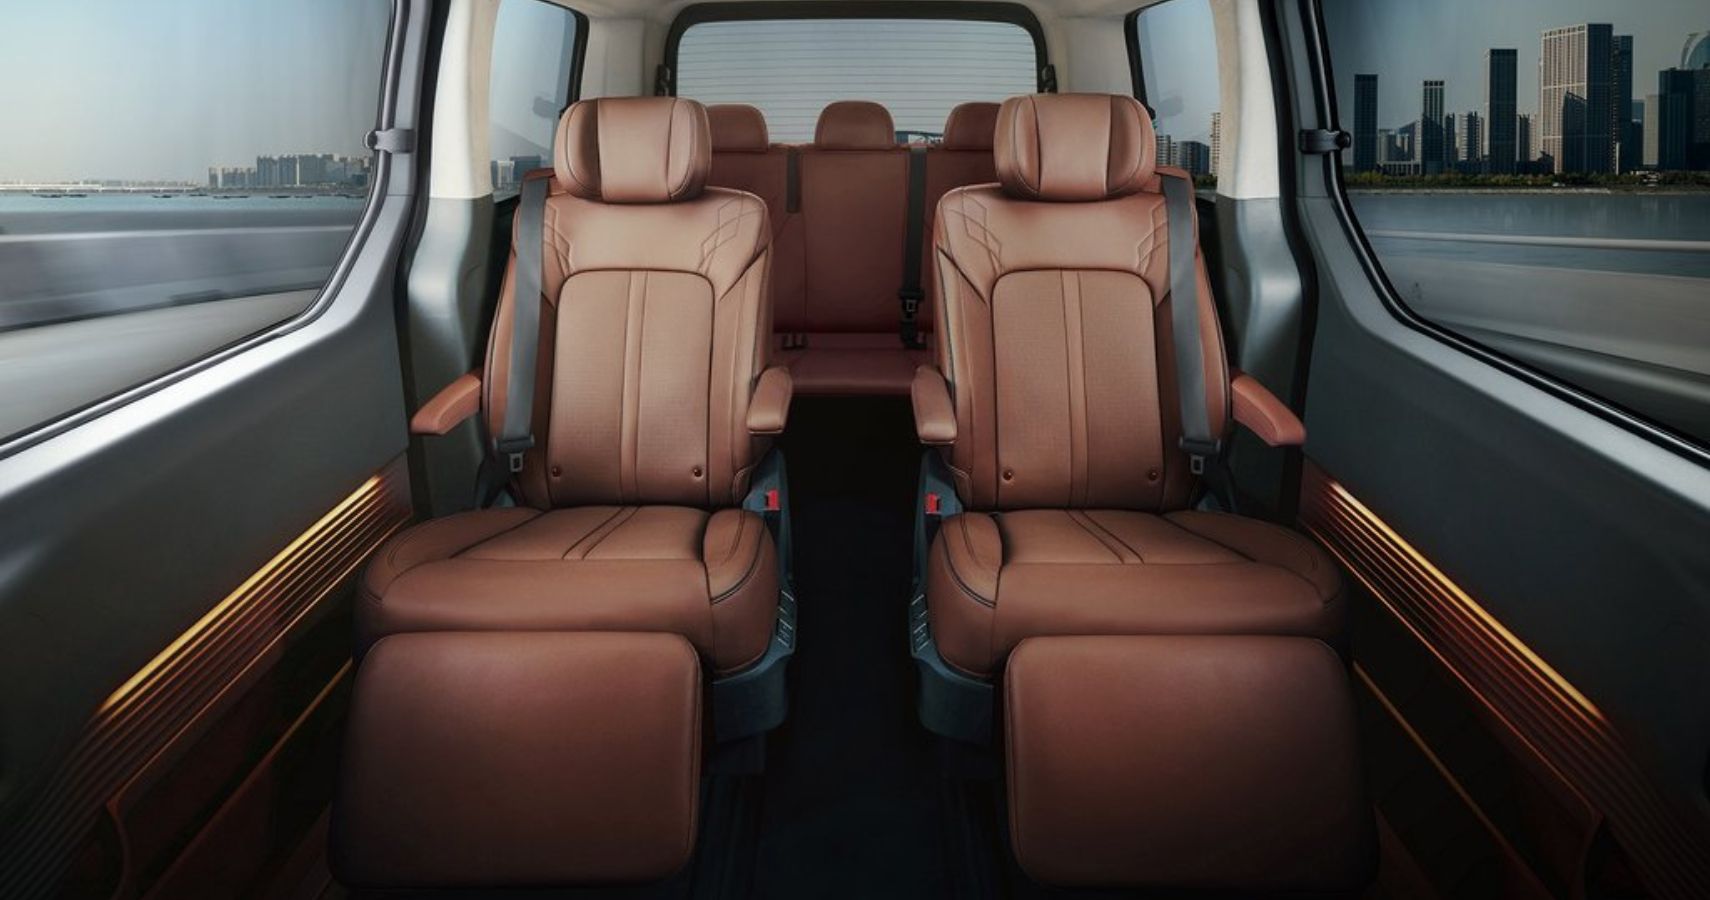 2022-hyundai-staria-interior-cabin-seats-overview